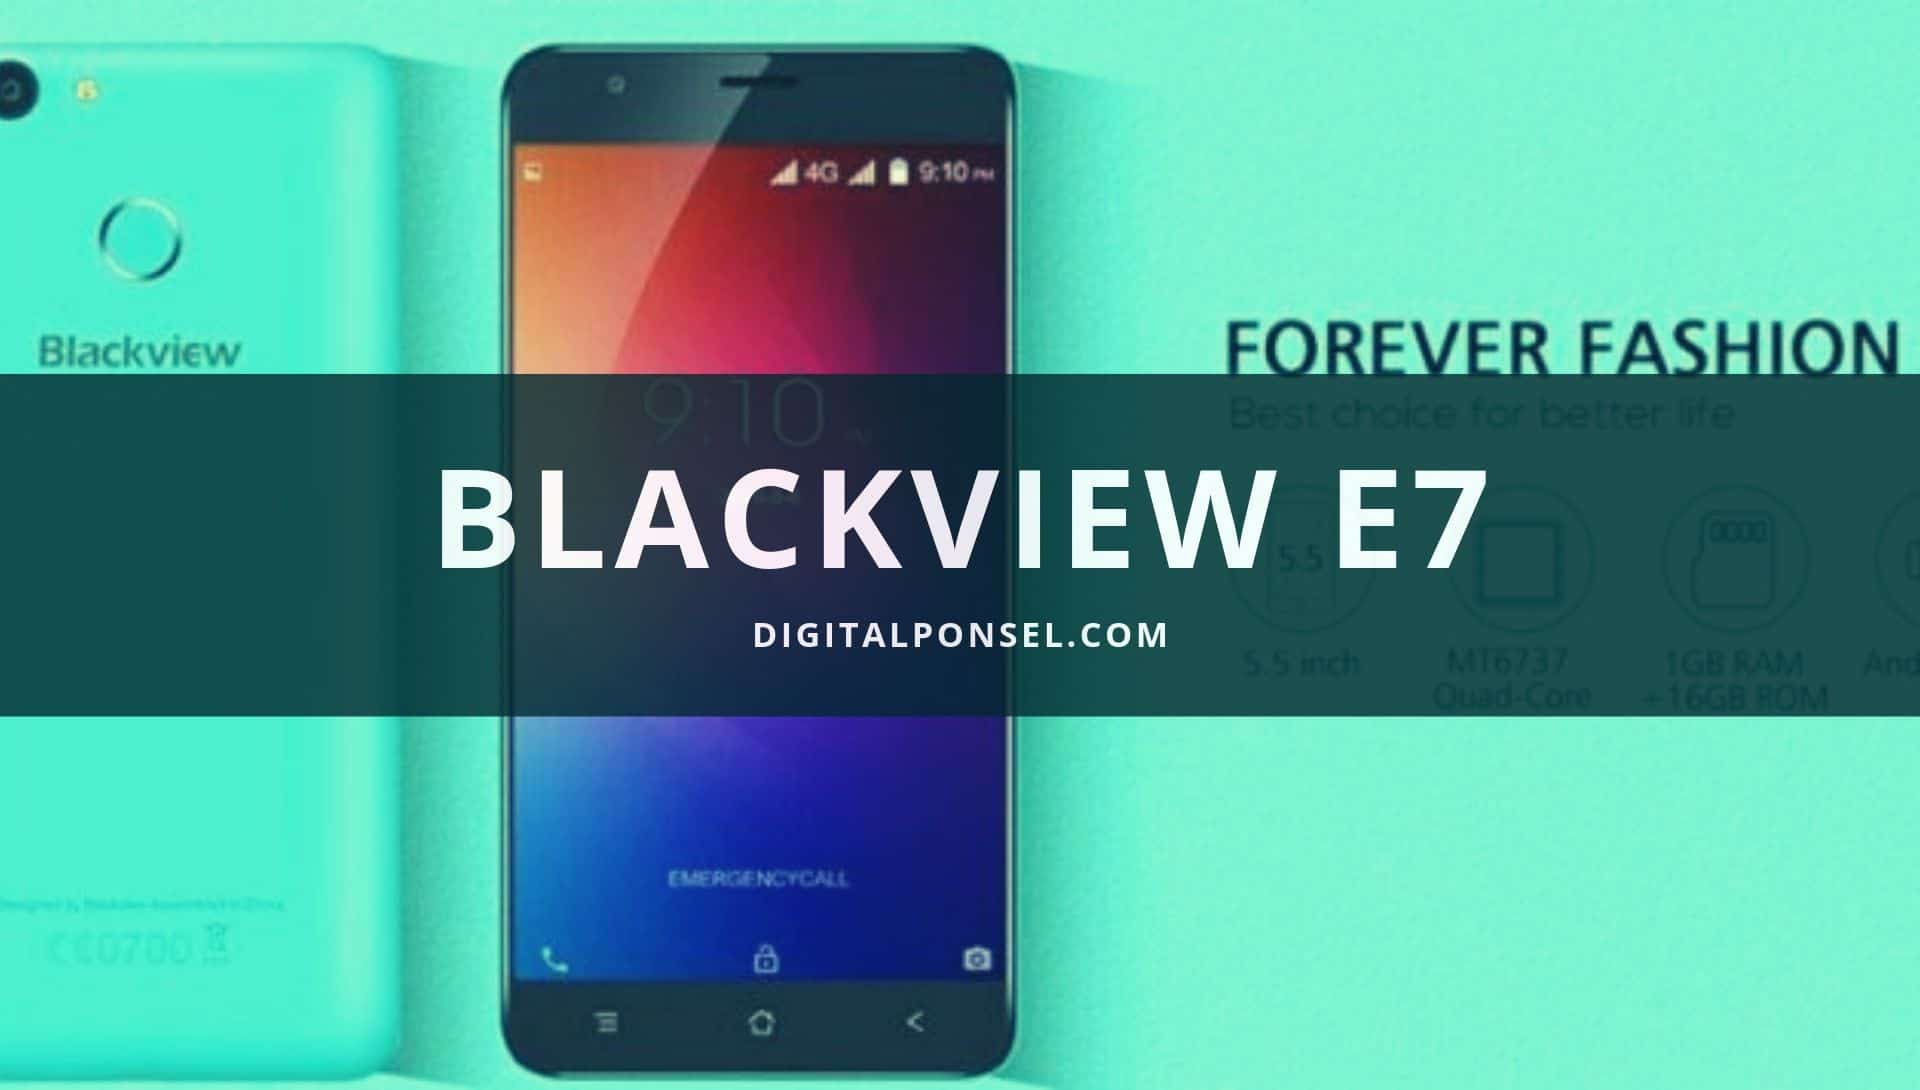 Blackview E7